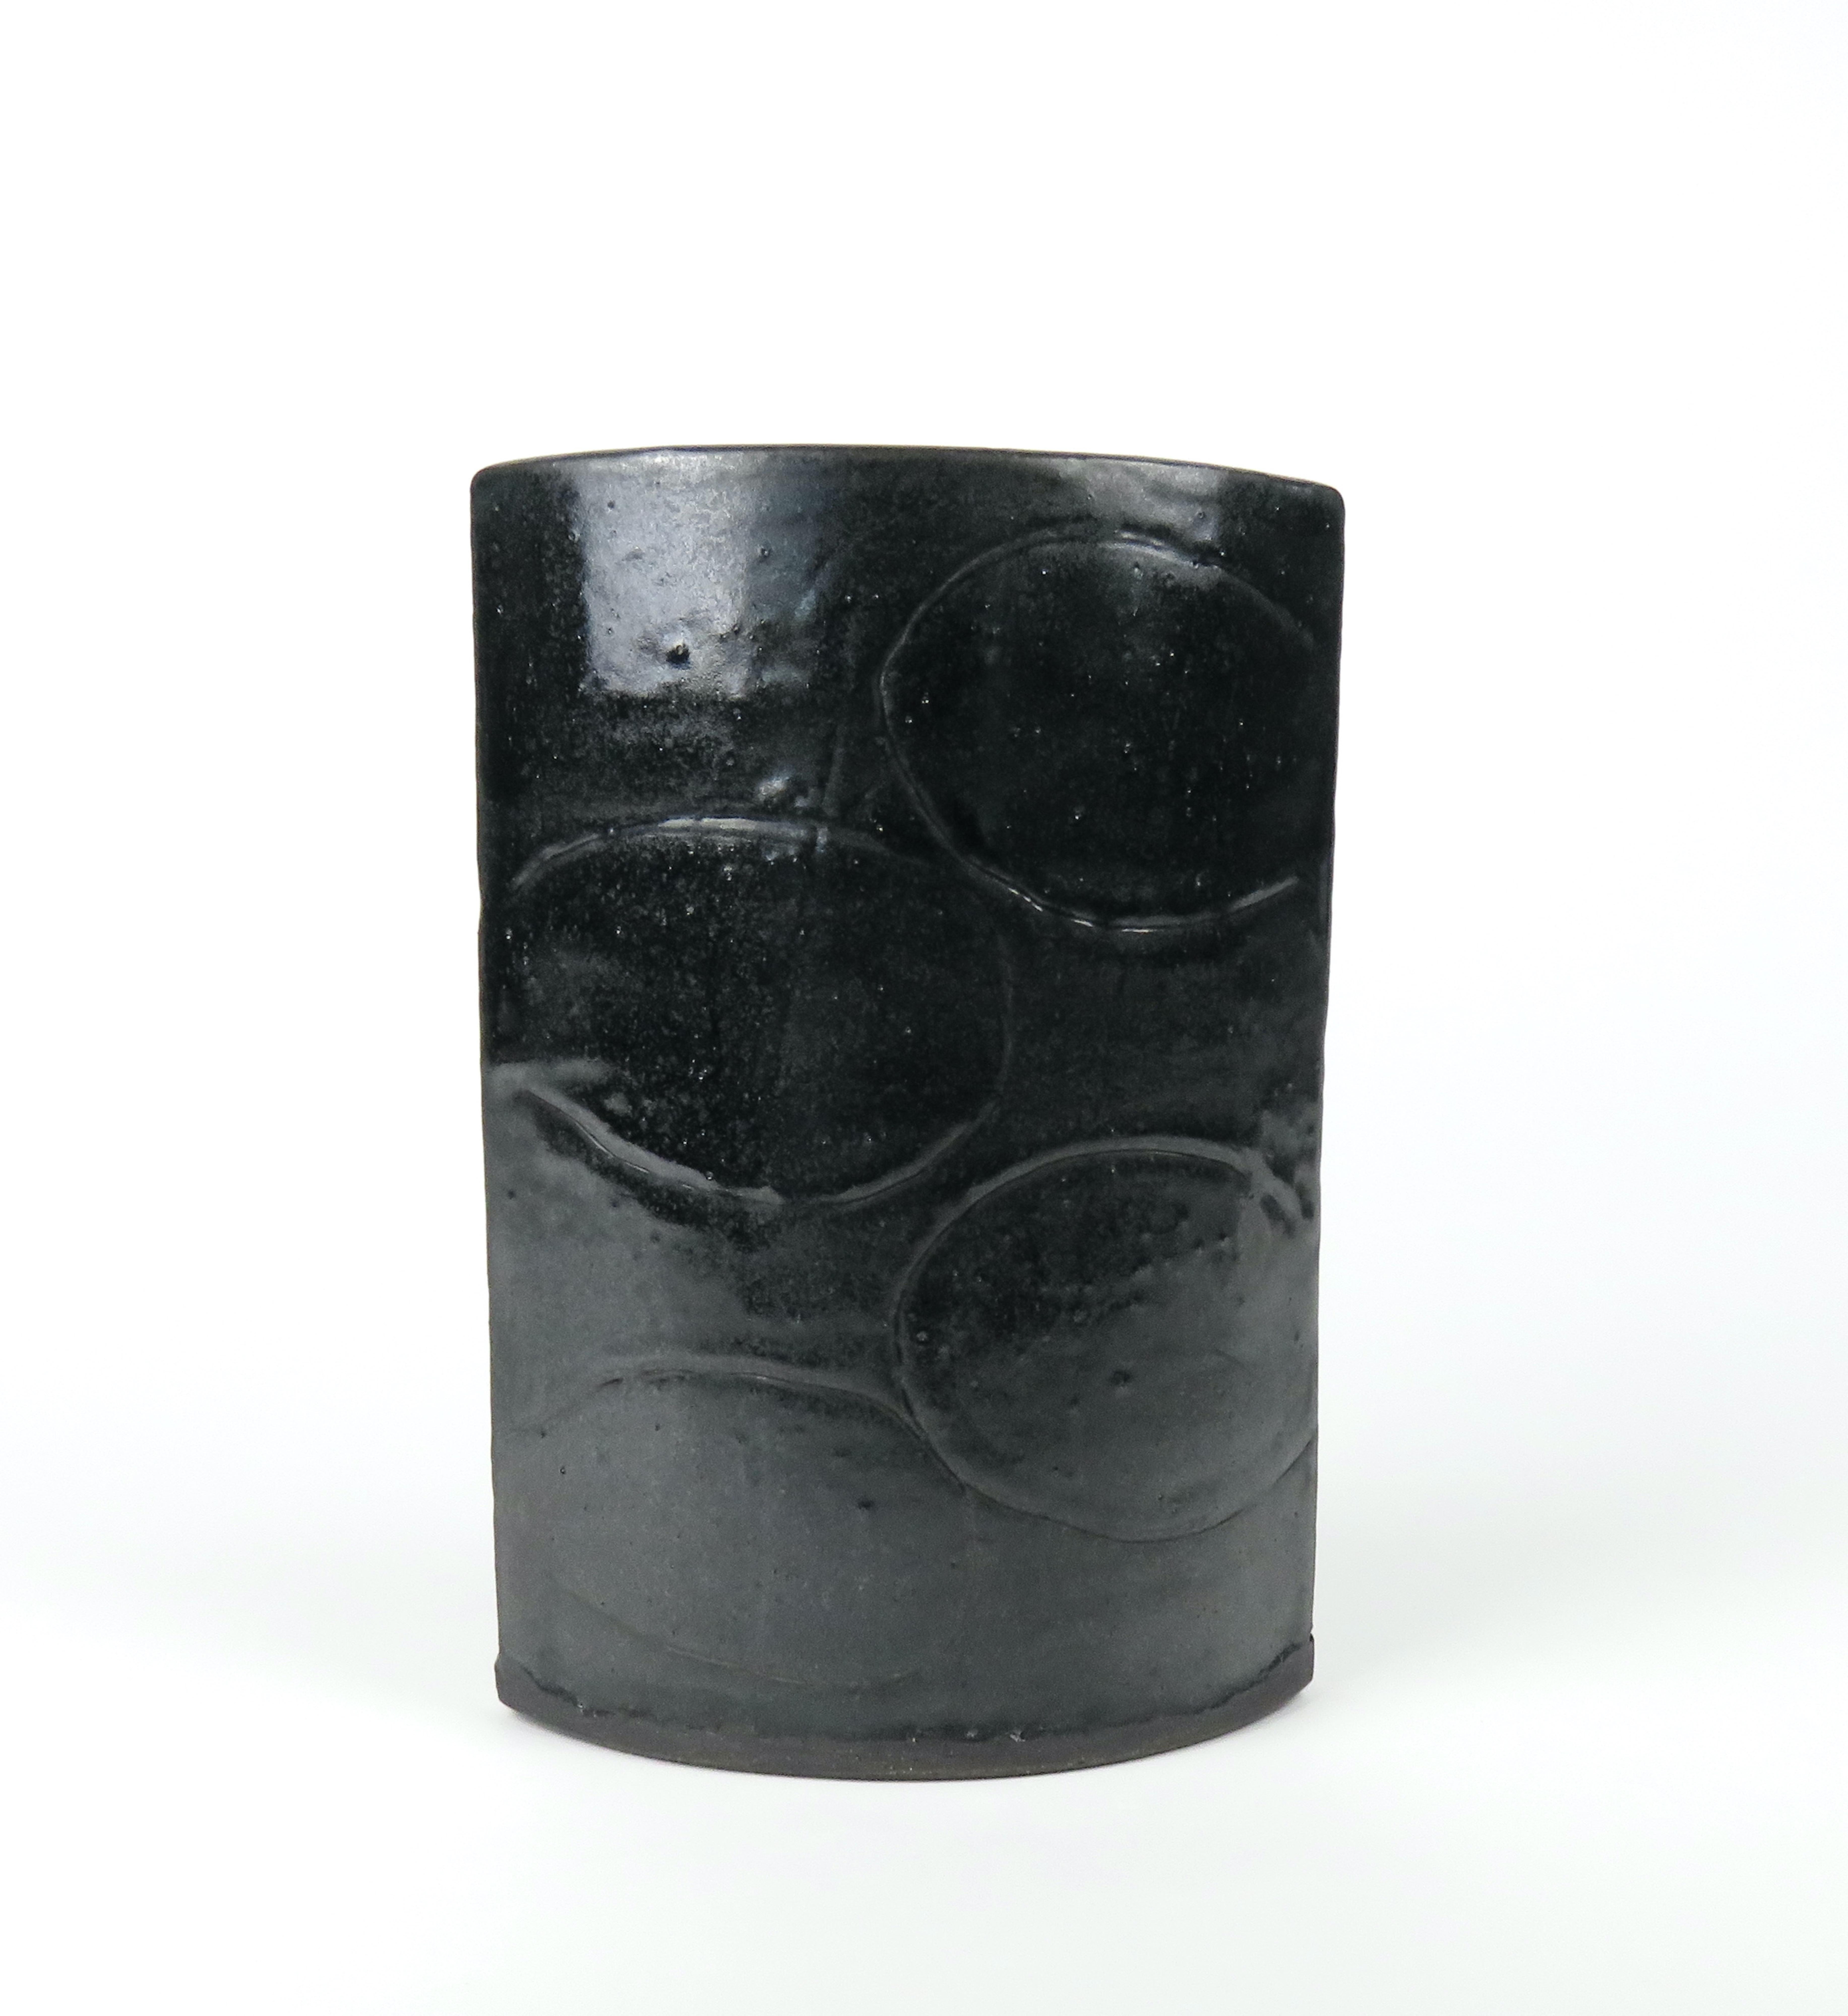 Ce vase a une glaçure noire succulente qui présente des mouchetures et de la profondeur. Une conception originale de l'artiste Helena Starcevic, il se compose de 2 murs en arc avec des motifs sculptés à la main. L'argile foncée est roulée à la main,